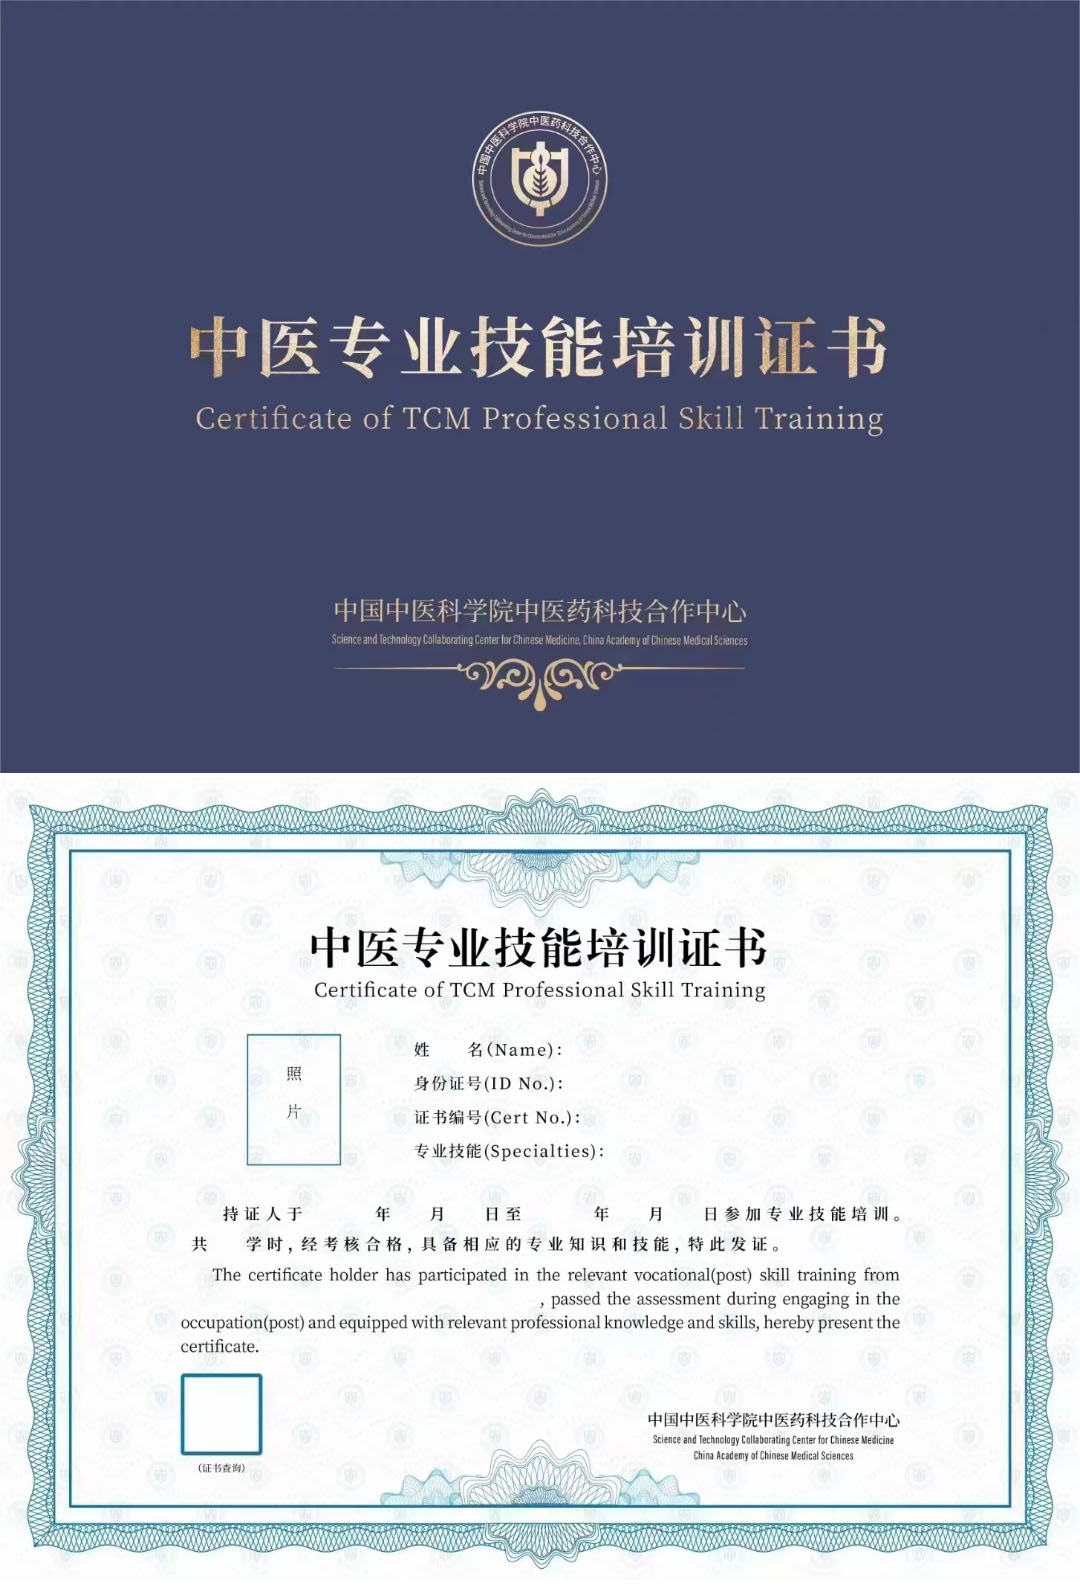 中国中医科学院中医药科技合作中心 中医专业技术培训证书 中医药熨、药浴师证证书样本